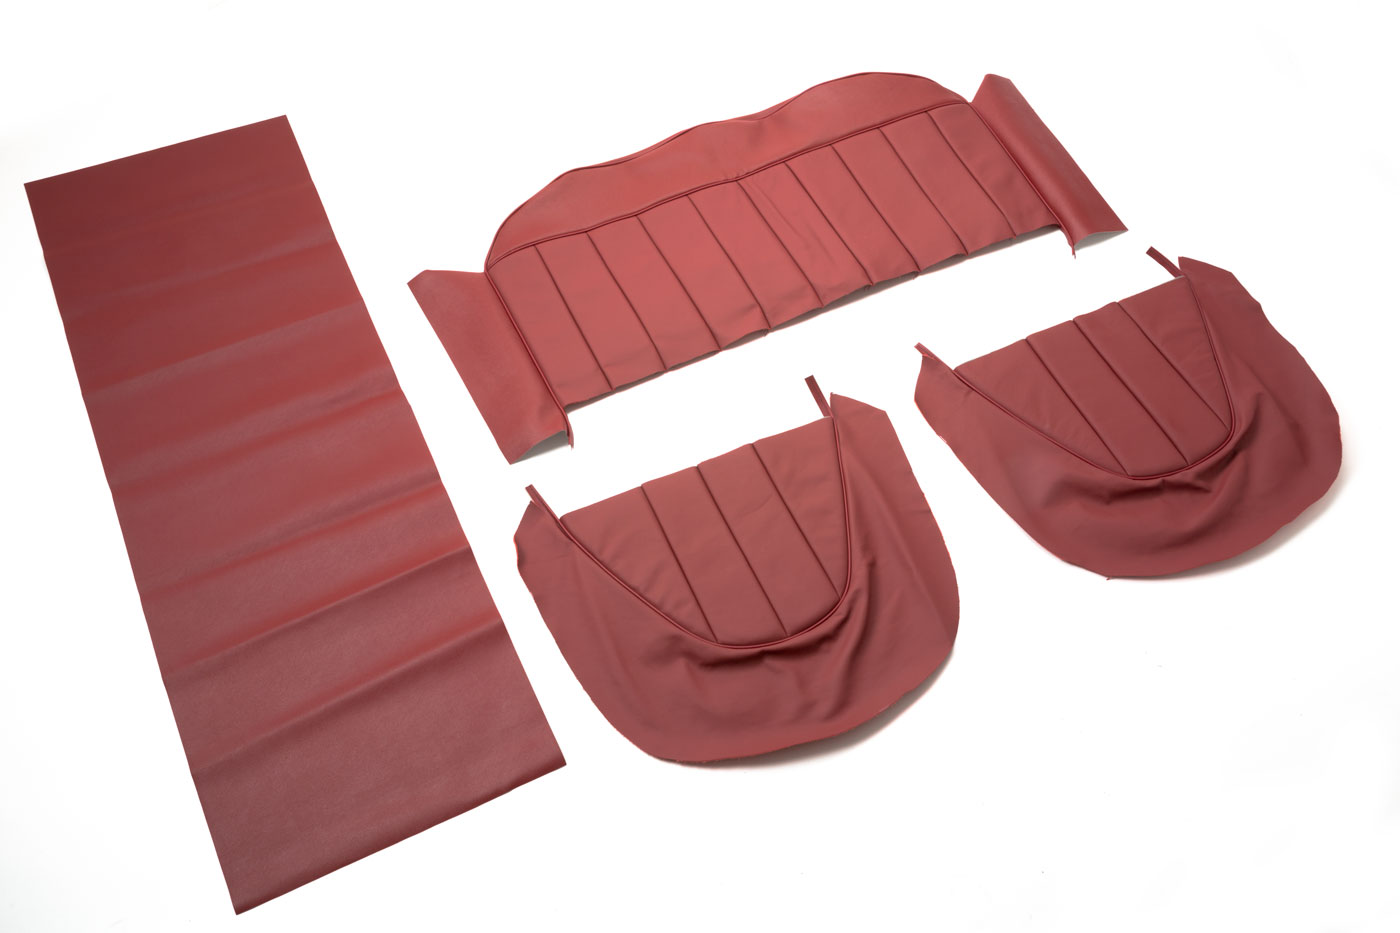 Ledersitzbezüge
Leather seat covers
Housses de siège en cuir